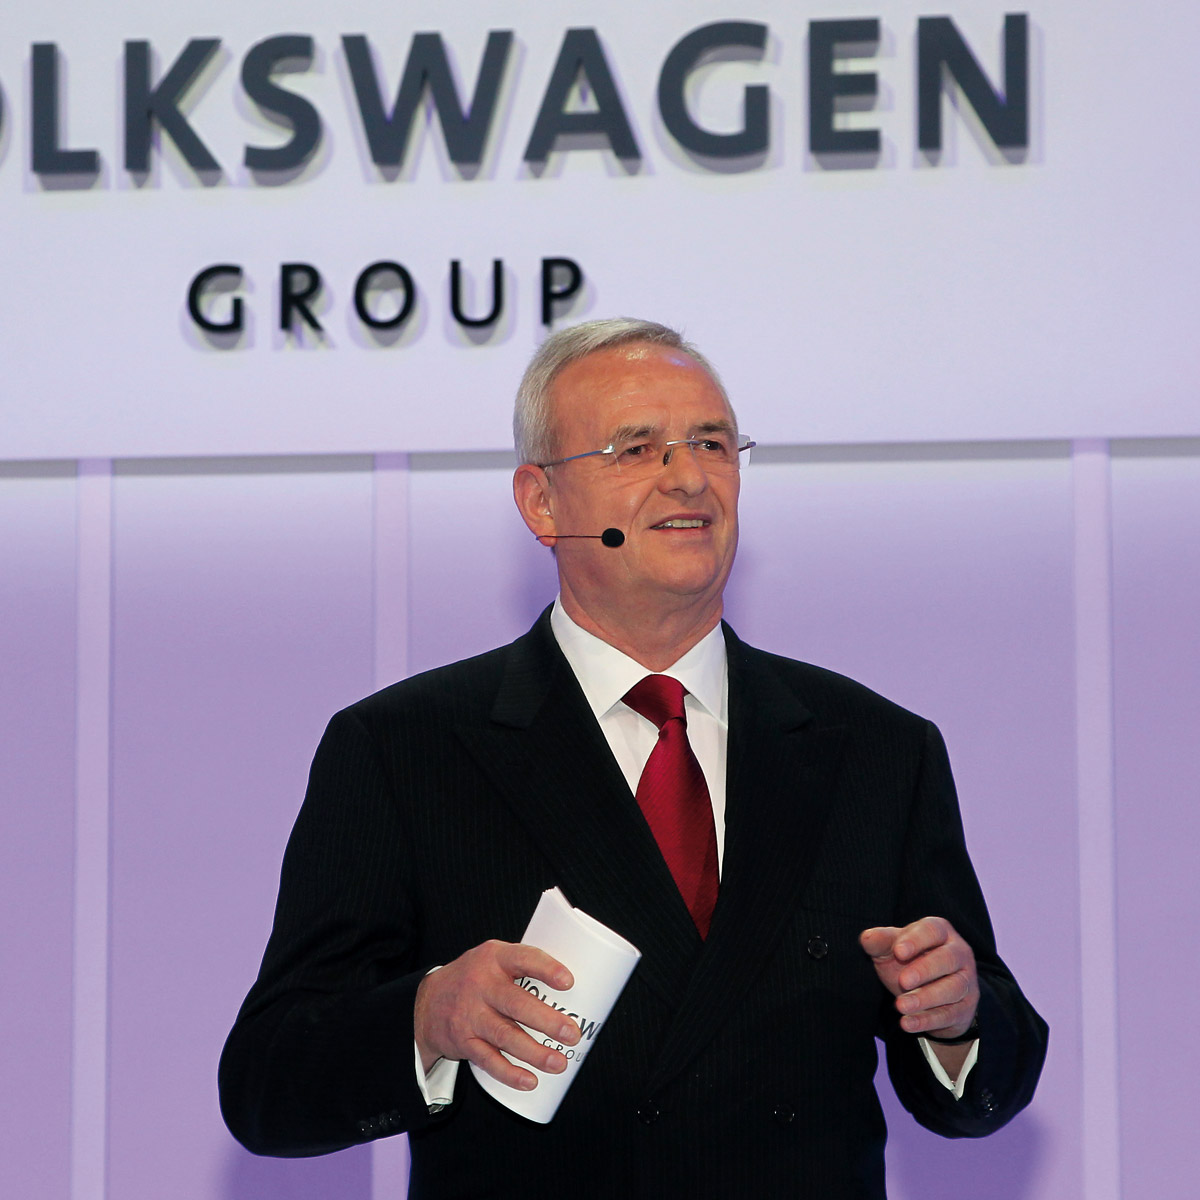 Professor Dr. Martin Winterkorn har arbejdet i Volkswagen-koncernen siden 1993. Senere blev han bl.a. været Audi-chef og siden 2007 koncernchef. Foto: VW